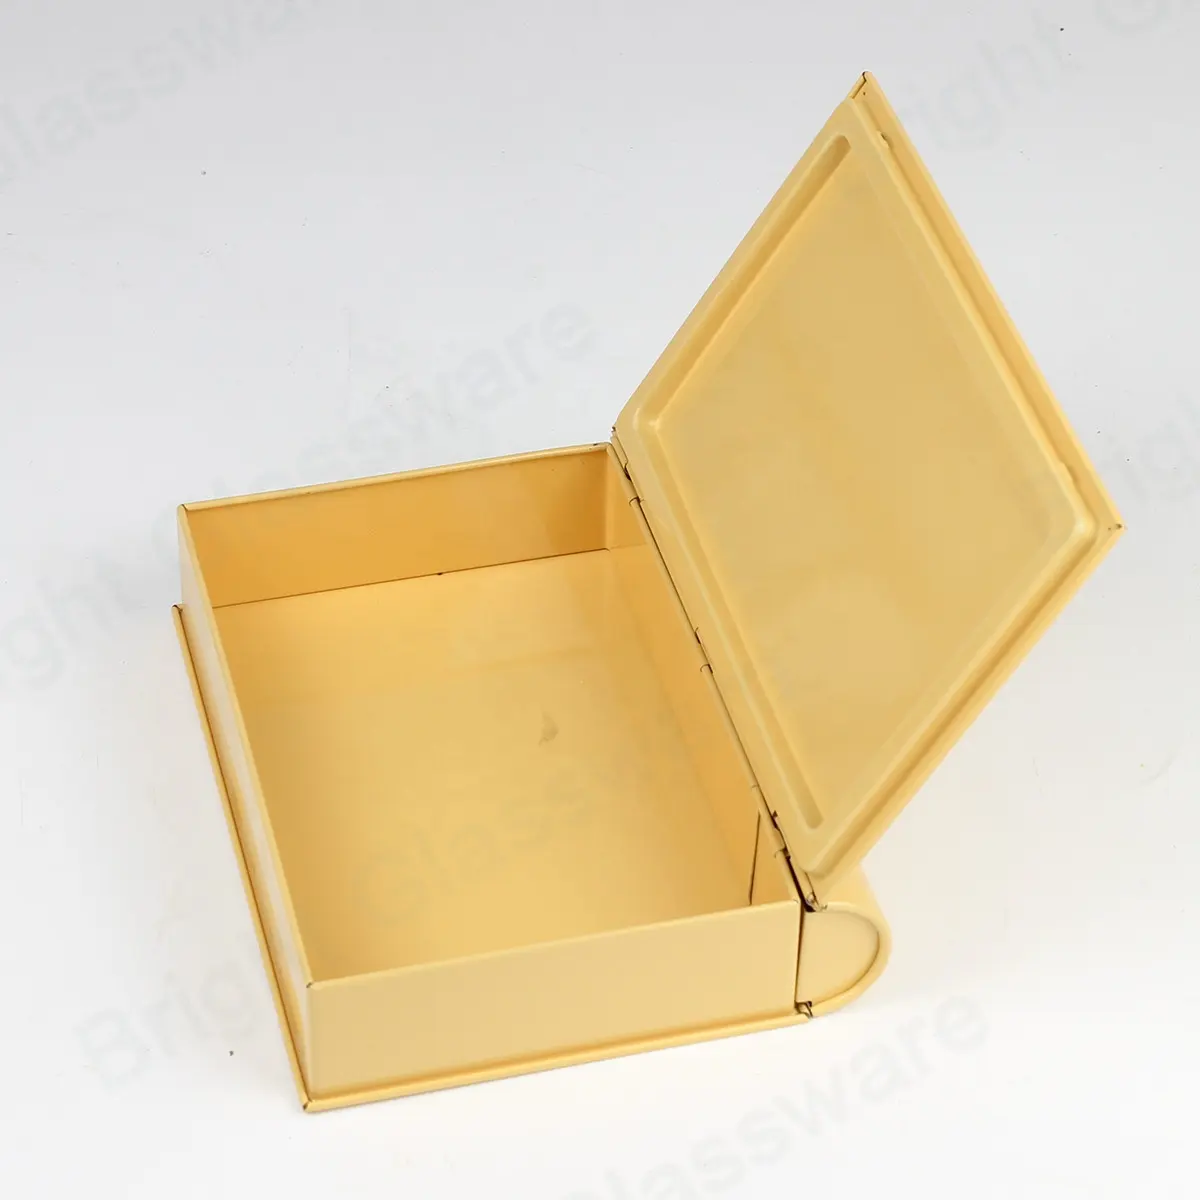 カスタム印刷されたゴールドブック型の空のクリスマスキャンディークッキーティンコンテナボックス